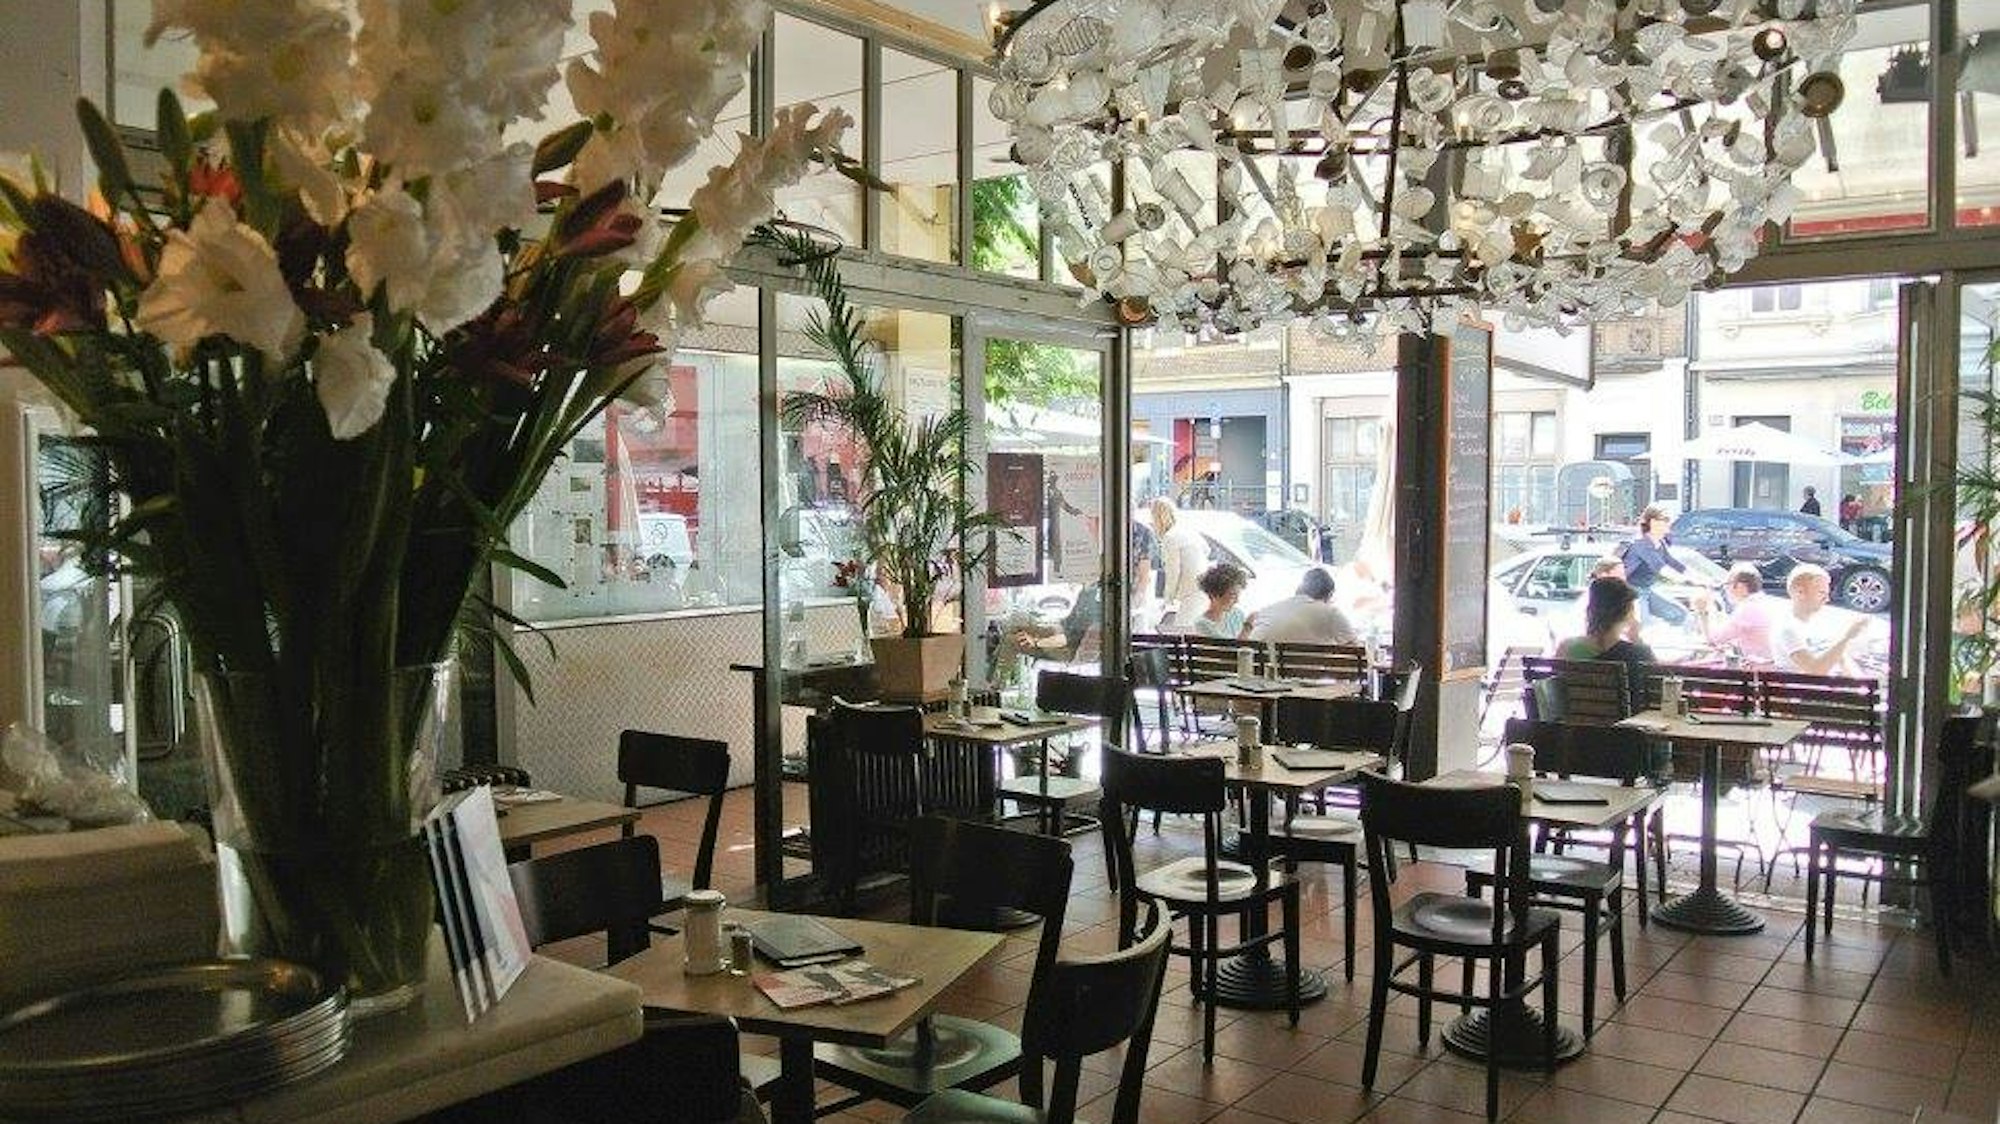 Das Café Bauturm von innen, ein großer Blumenstrauß steht im Vordergrund und an der Decke hängt ein großer Kronleuchter